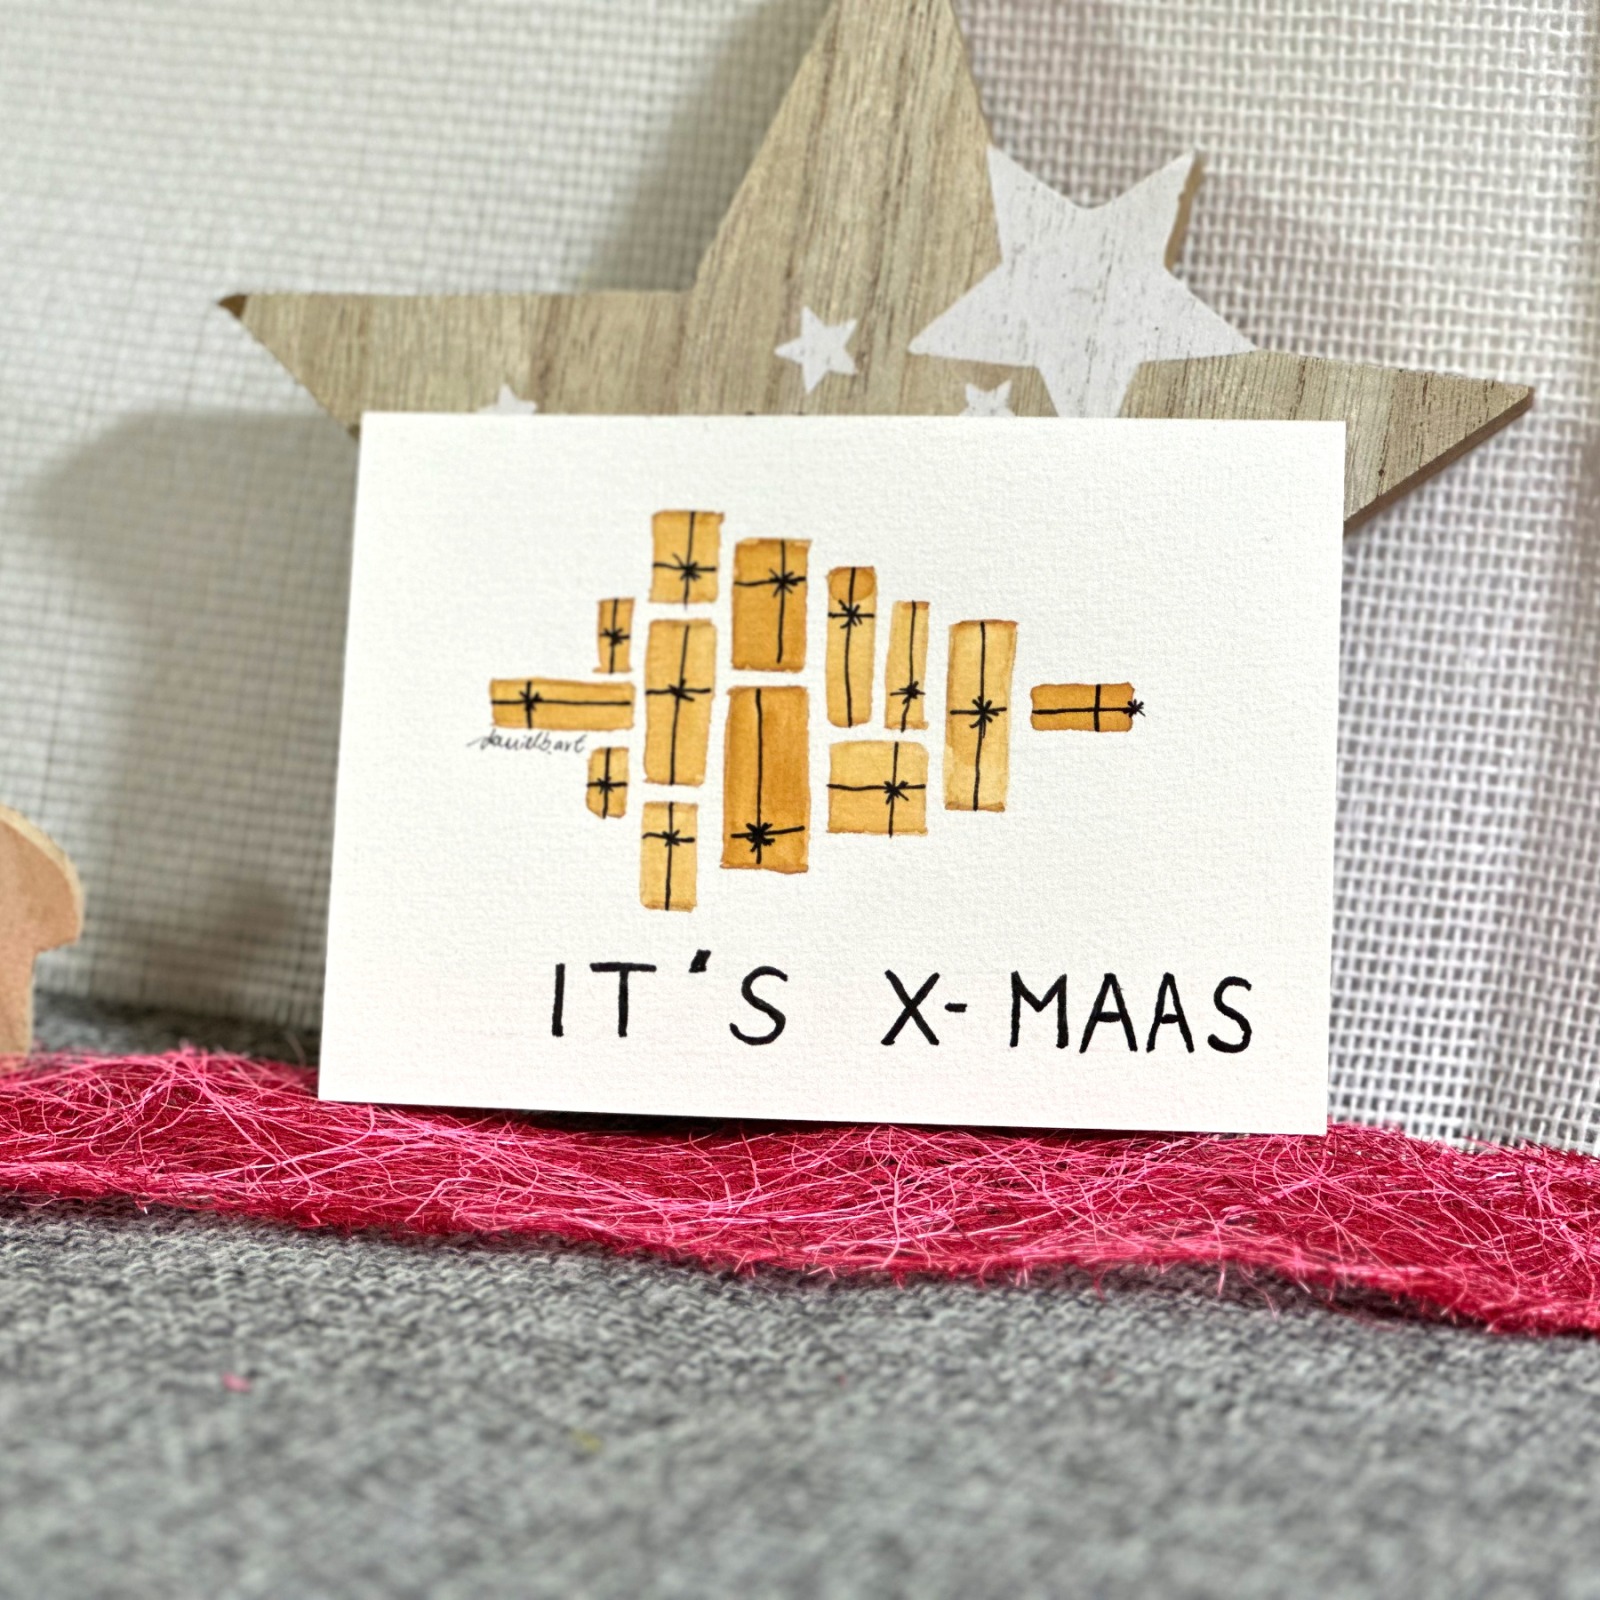 Schöne Weihnachtskarte - ITs X-MAS